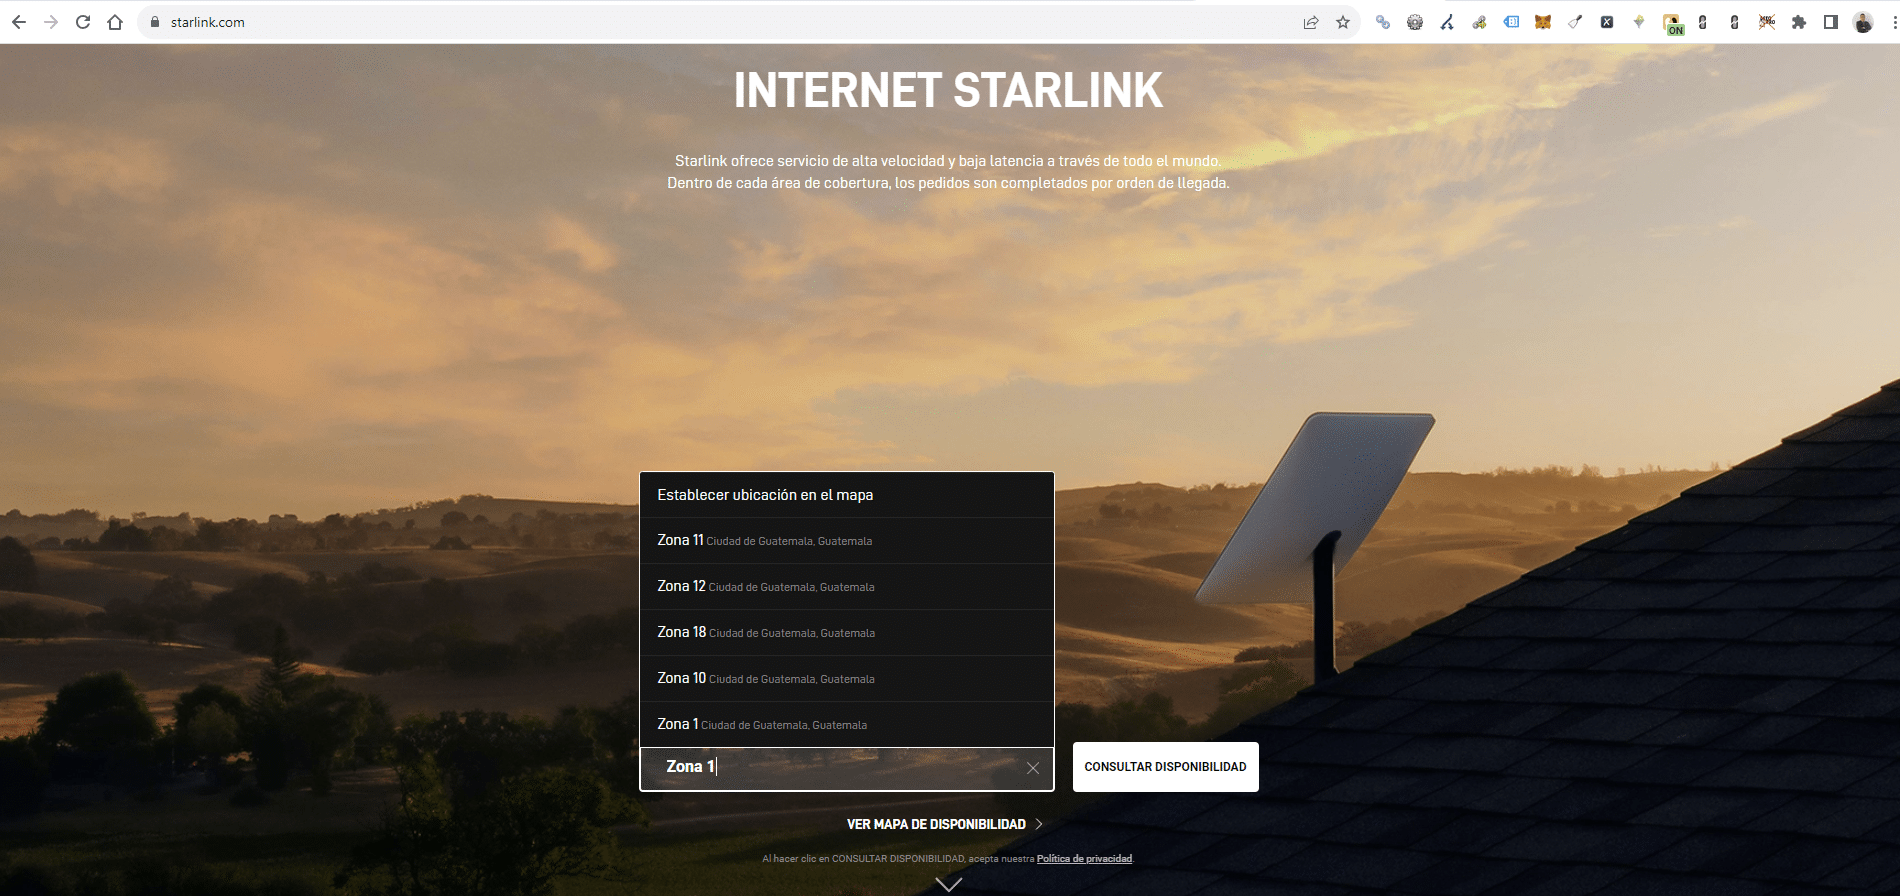 Consultar disponibilidad Internet Starlink